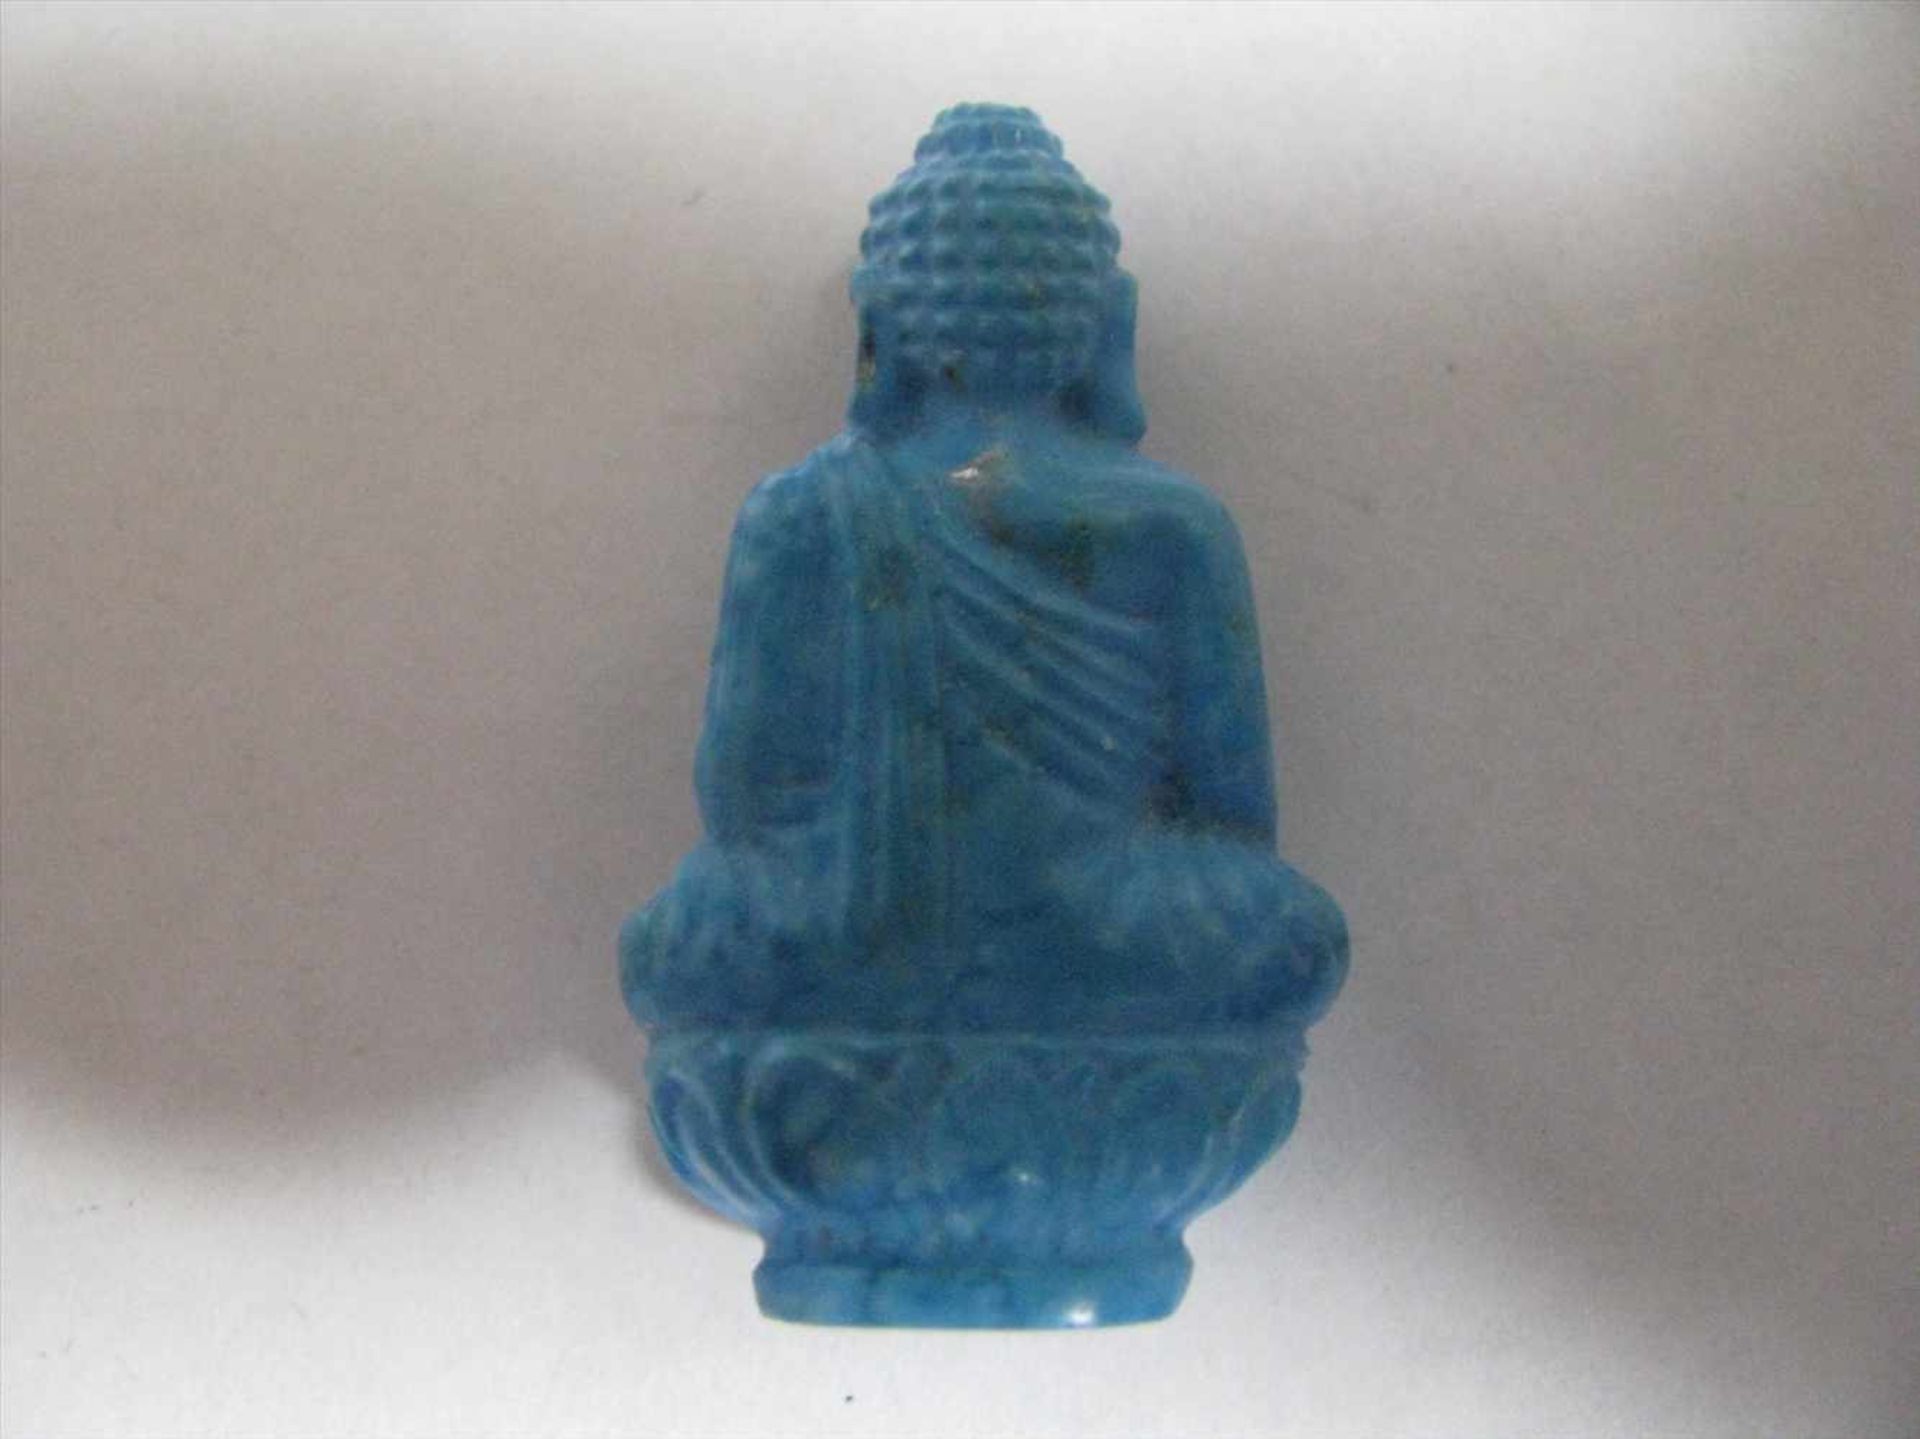 Sitzender Buddha auf Lotusthron, Türkis fein beschnitzt, 3 x 2 x 1 cm. - Bild 2 aus 2